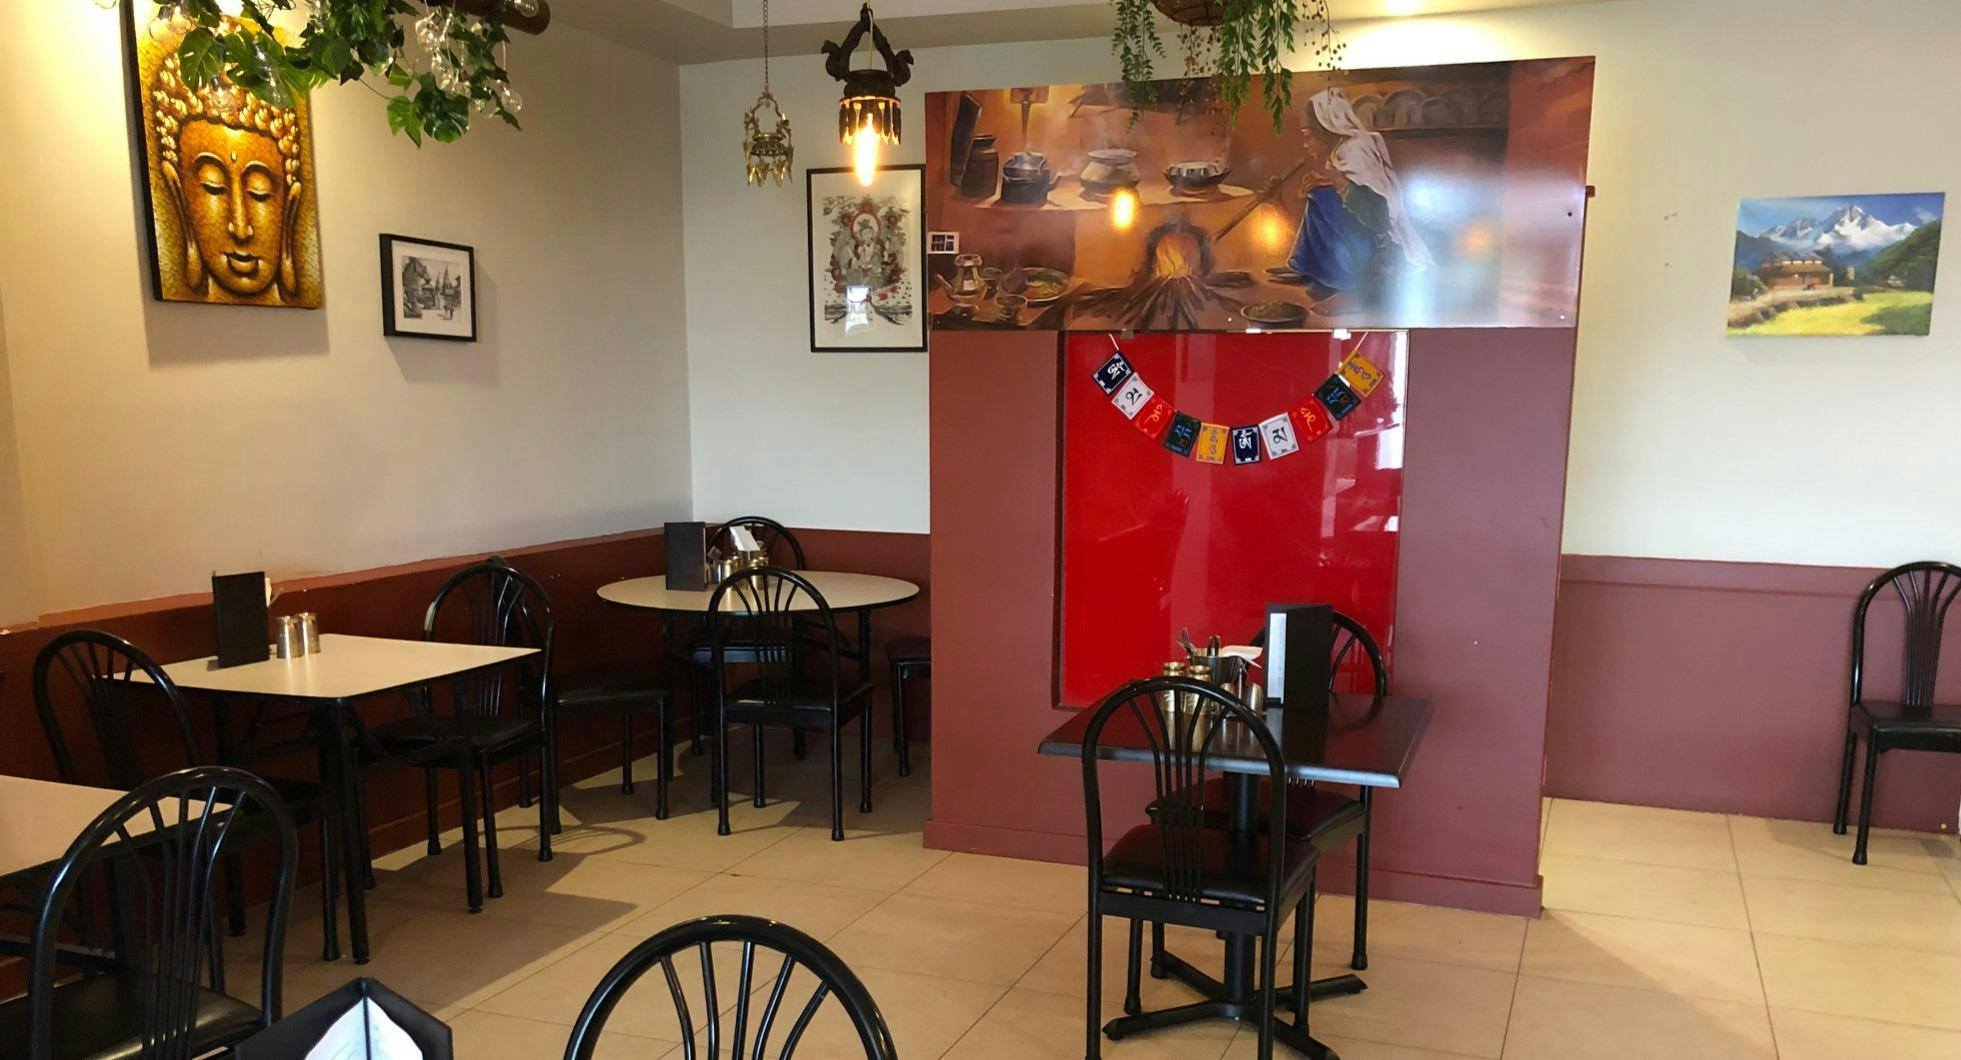 Photo of restaurant Chulo Nepalese Perth in Dianella, Perth